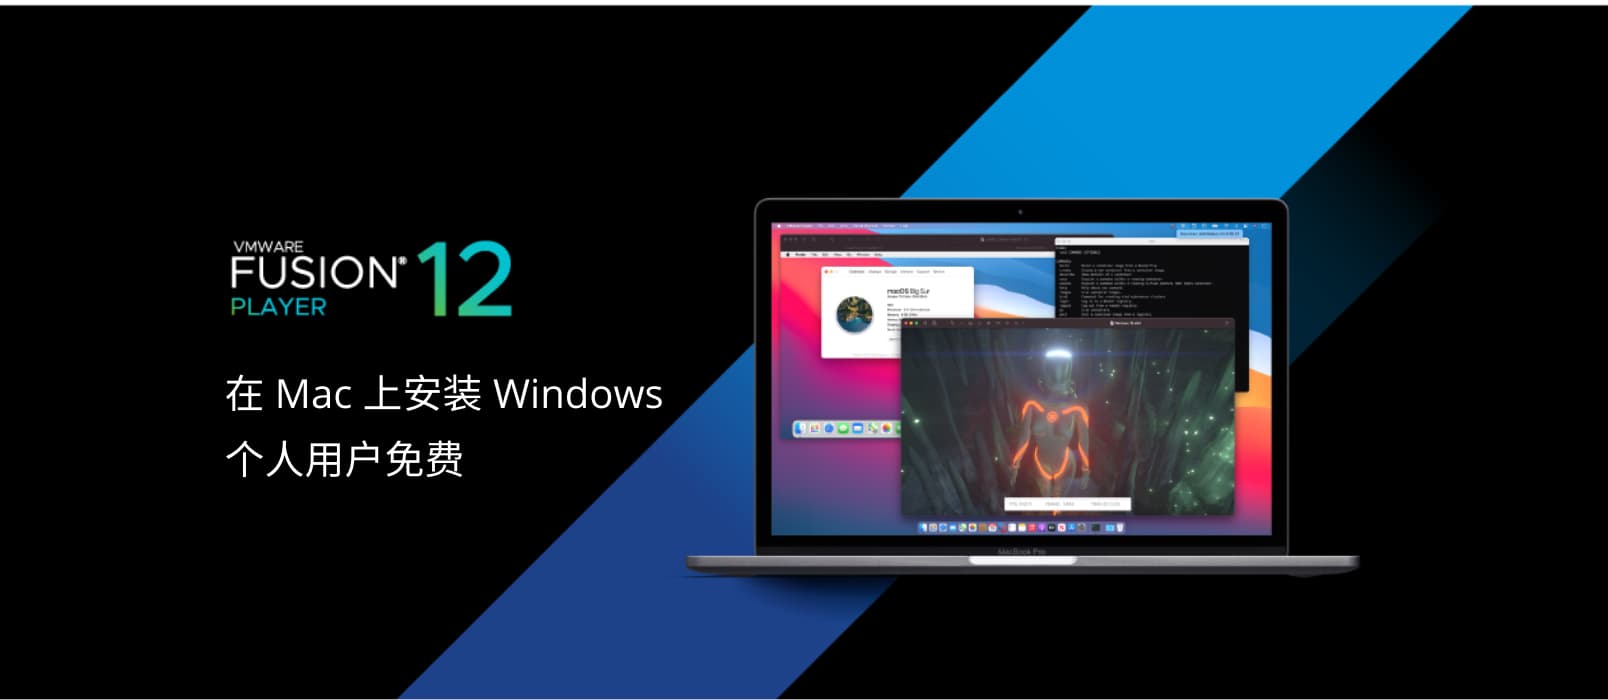 在 Mac 安装 Windows 的虚拟机工具 VMware Fusion 12 正式发布，个人免费 1